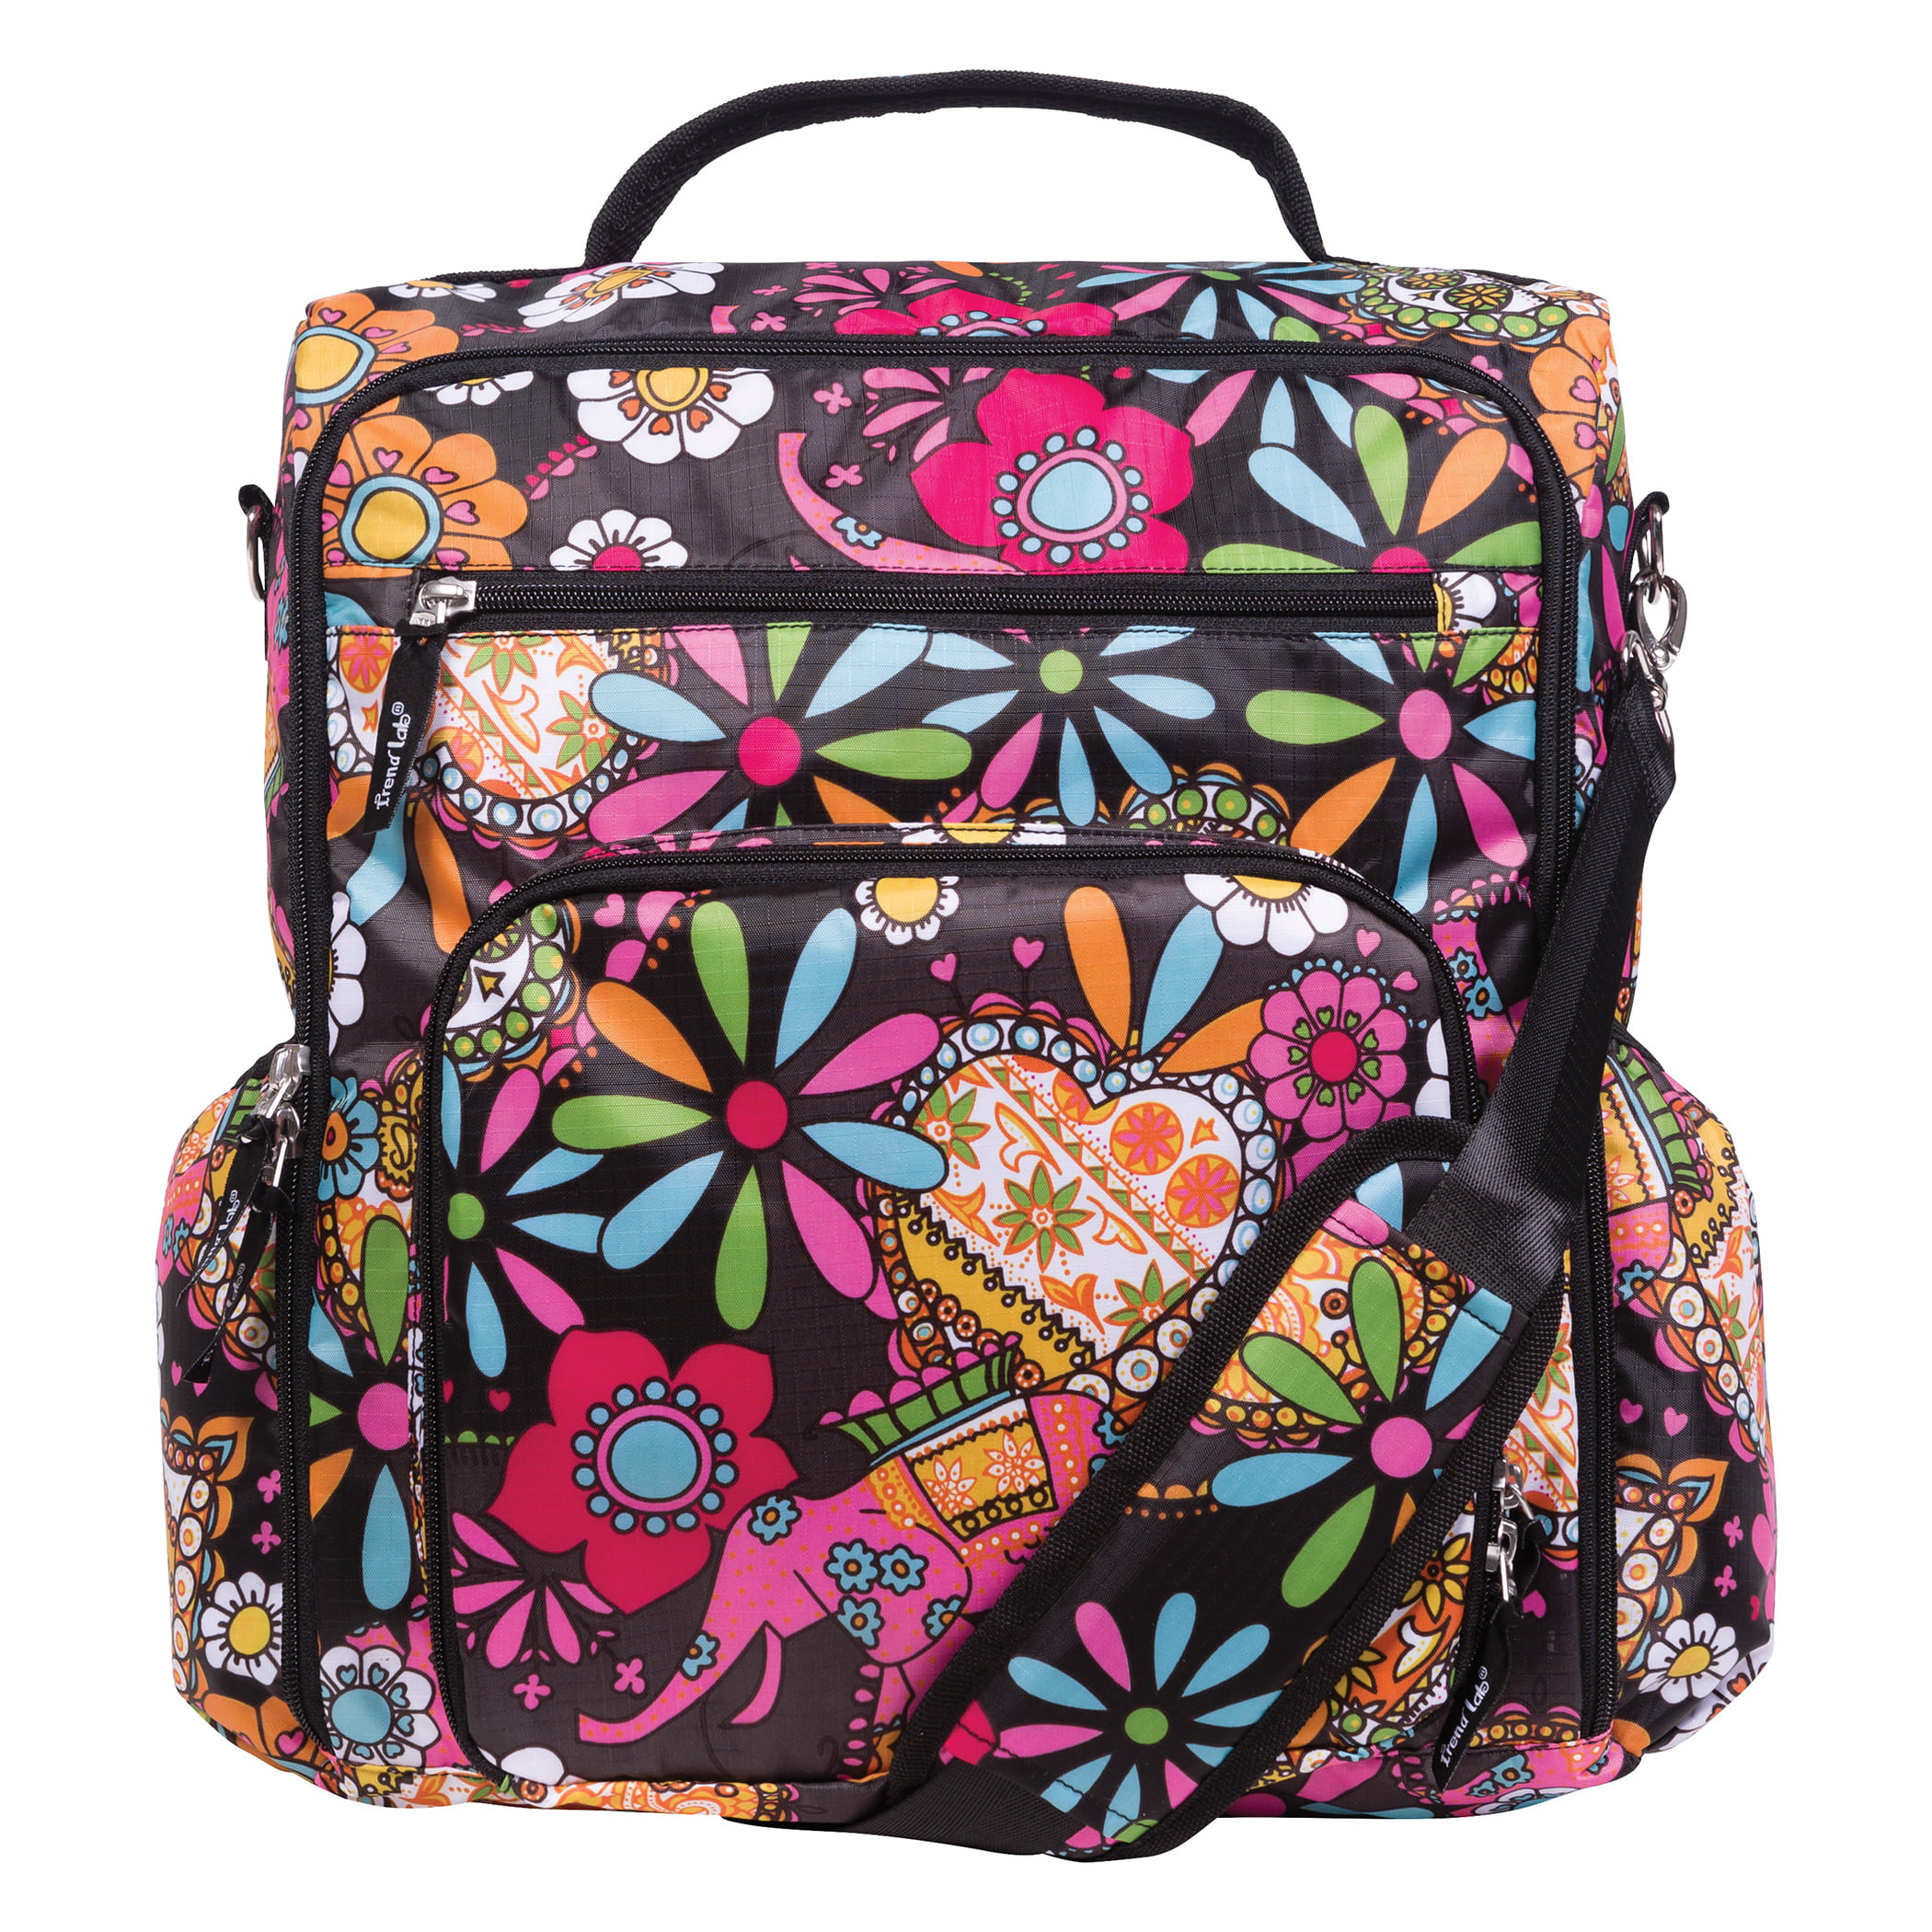 Bohemian Floral Convertible Backpack Diaper Bag - www.bagssaleusa.com